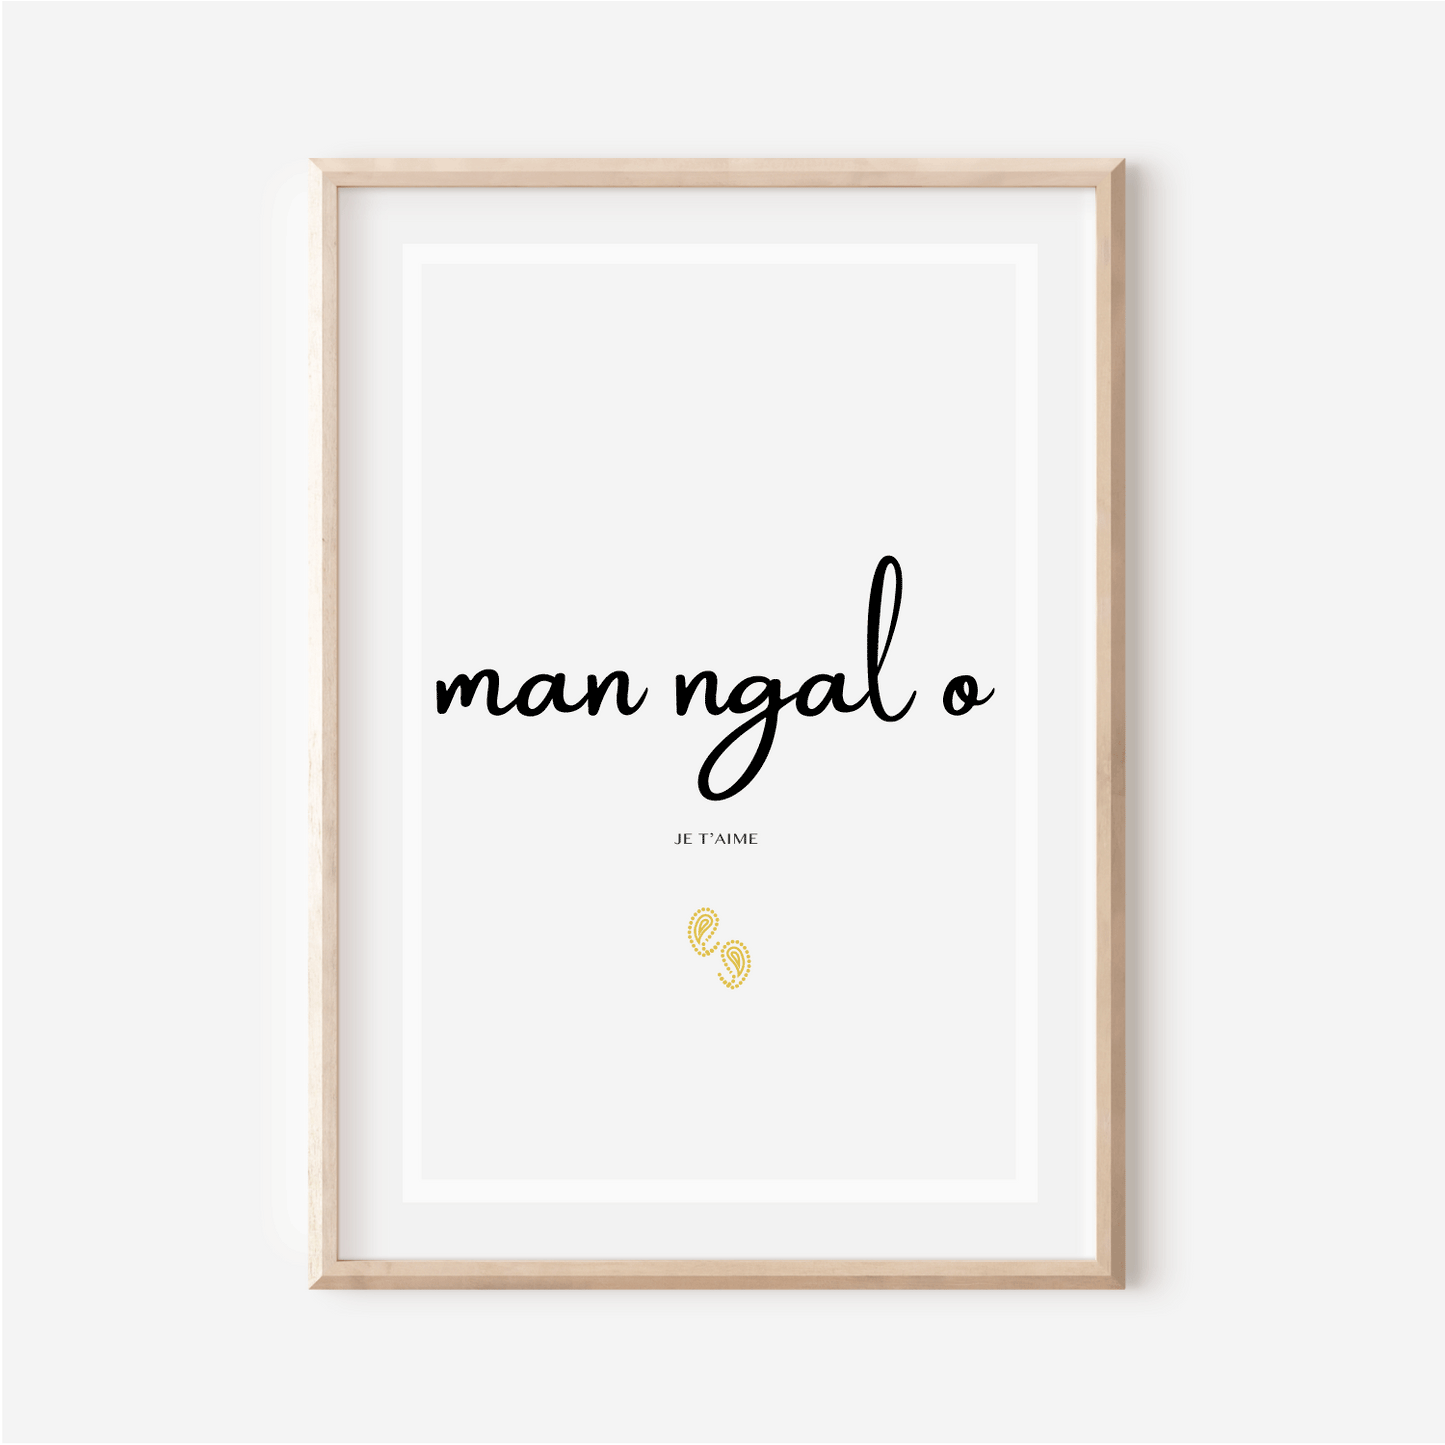 Affiche "Je t'aime" en Manjak - "Man ngal o" - 30x40 cm